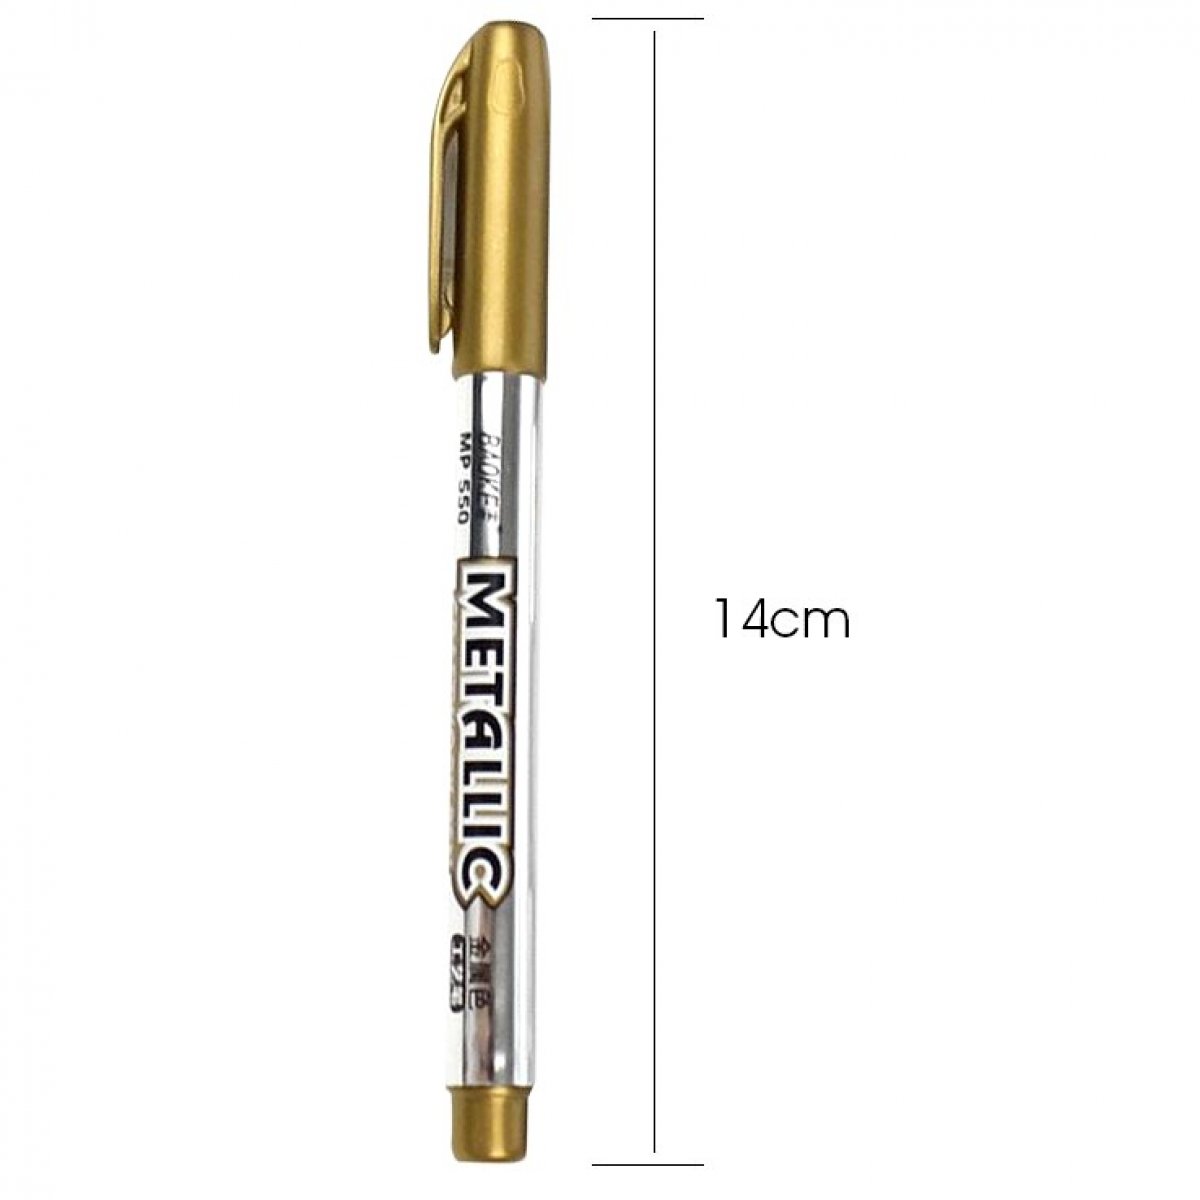 Stylo marqueur métallique doré et argenté, stylo marqueur de